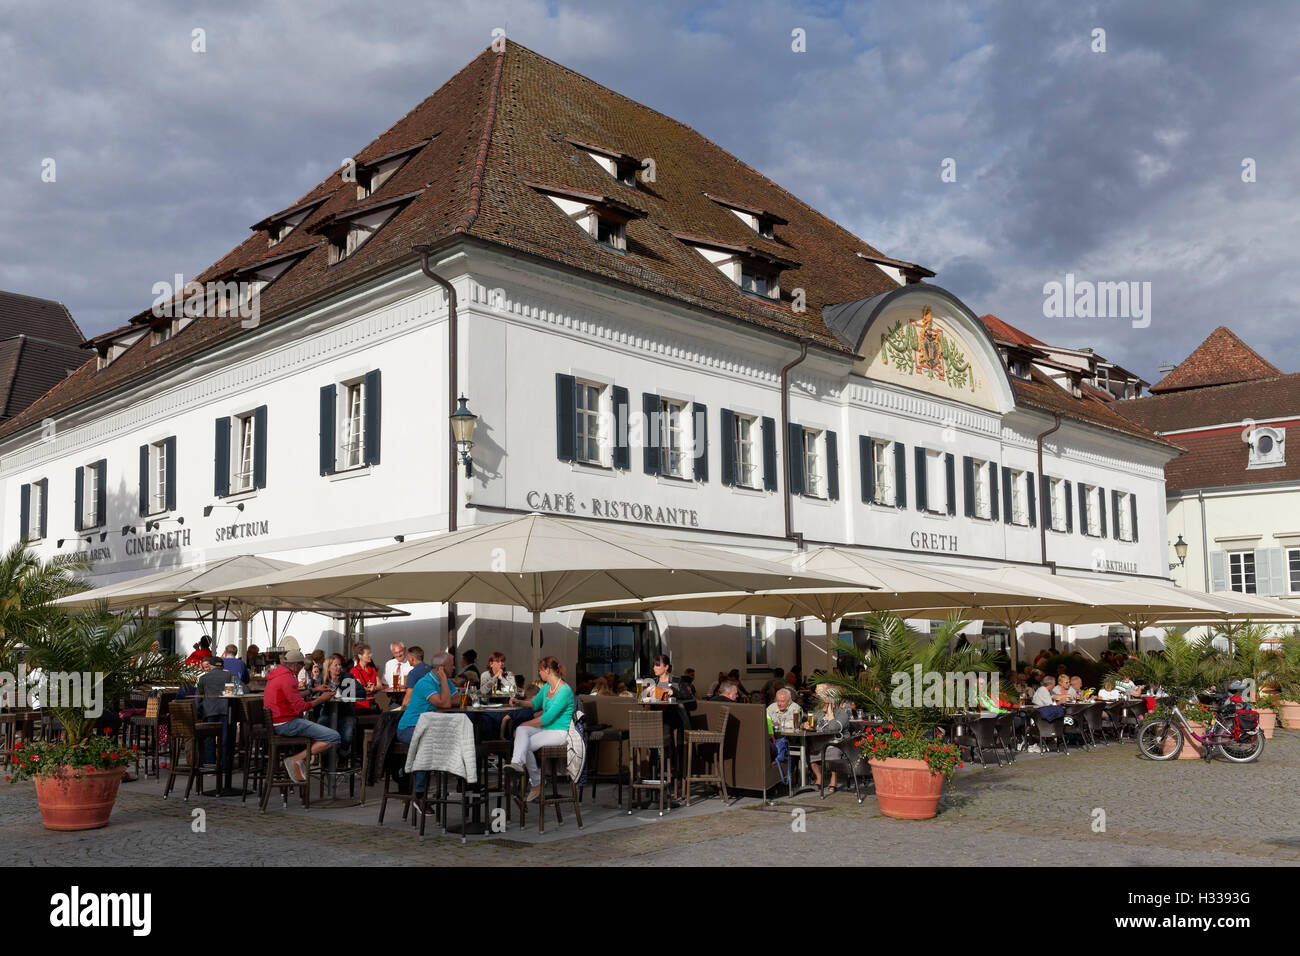 Gret, Markthalle mit Outdoor-Gastronomie am See Promenade, Überlingen, Bodensee, Baden-Württemberg, Deutschland Stockfoto